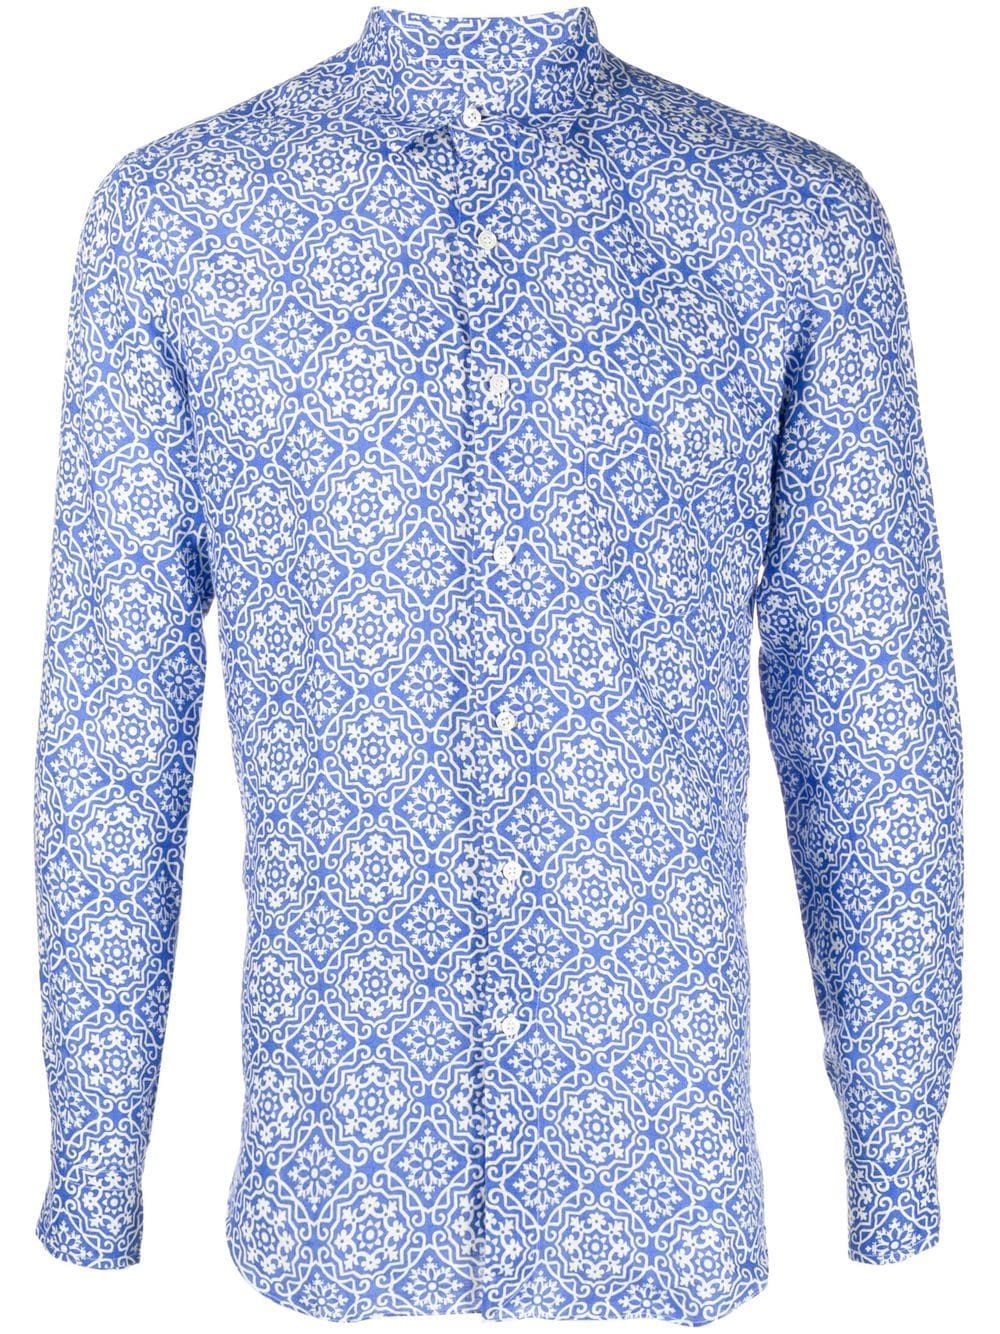 PENINSULA SWIMWEAR graphic-print long-sleeve shirt - Blue von PENINSULA SWIMWEAR